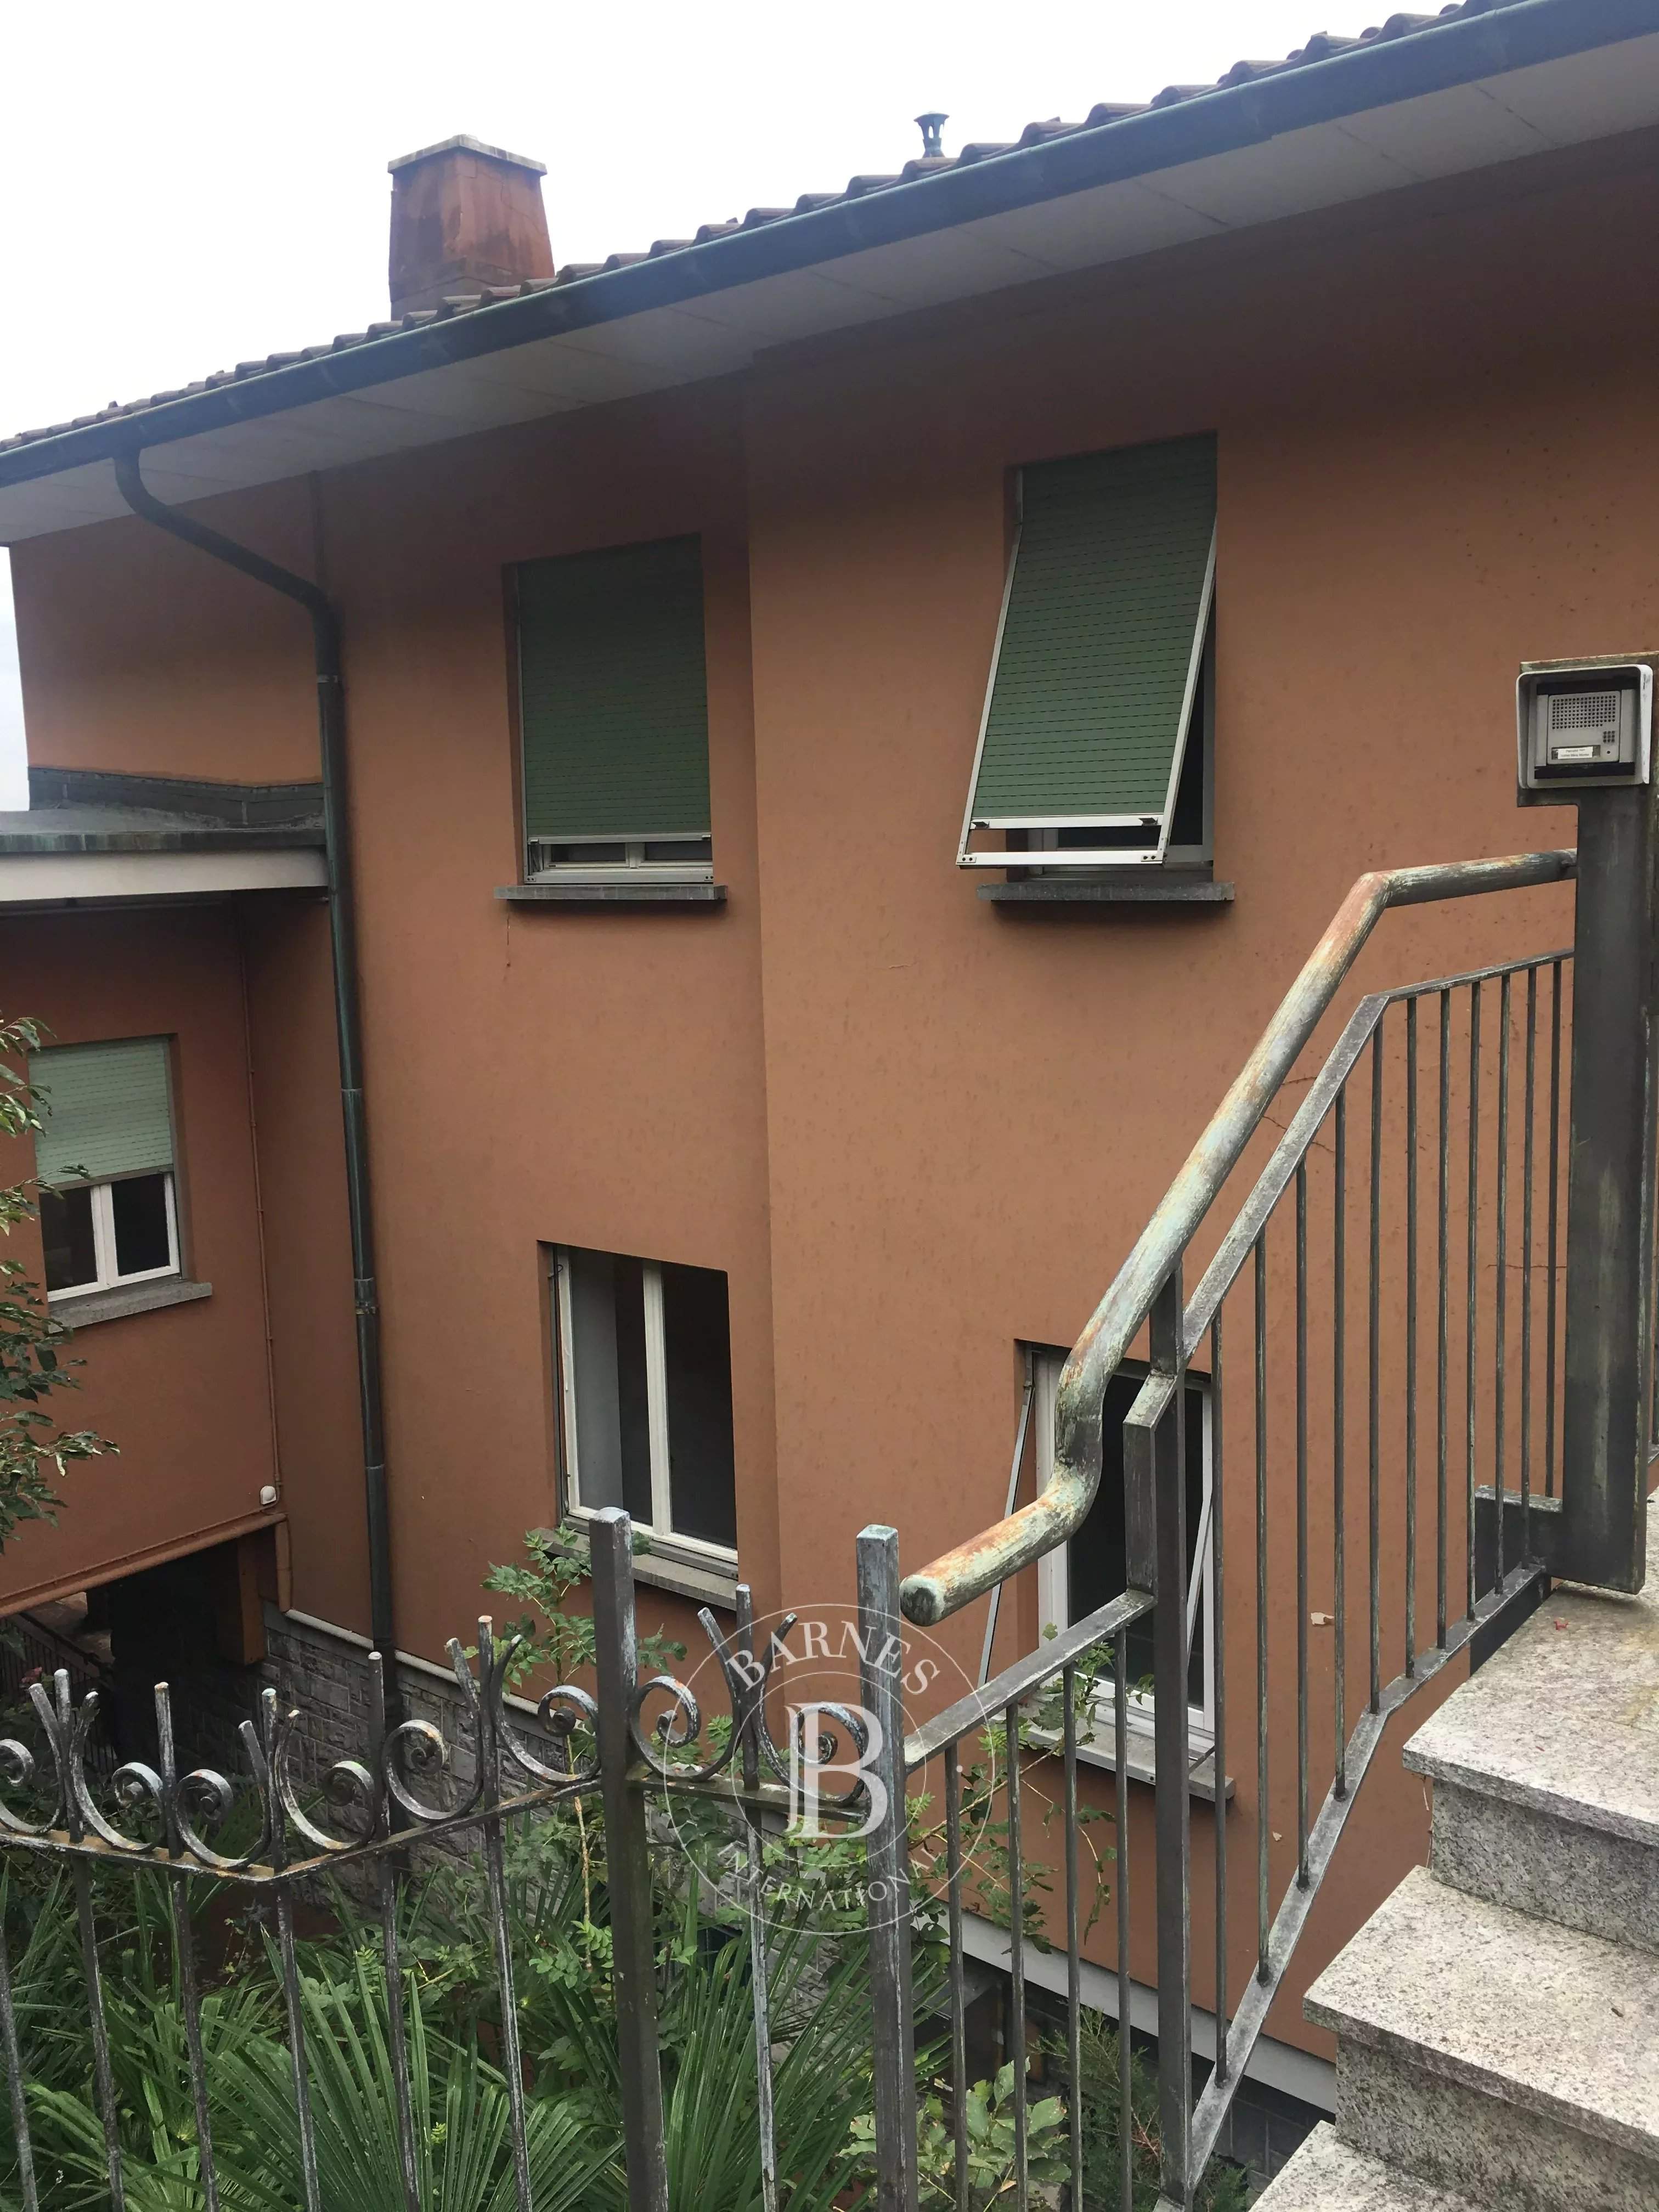 Campione d'Italia  - Apartment  - picture 14